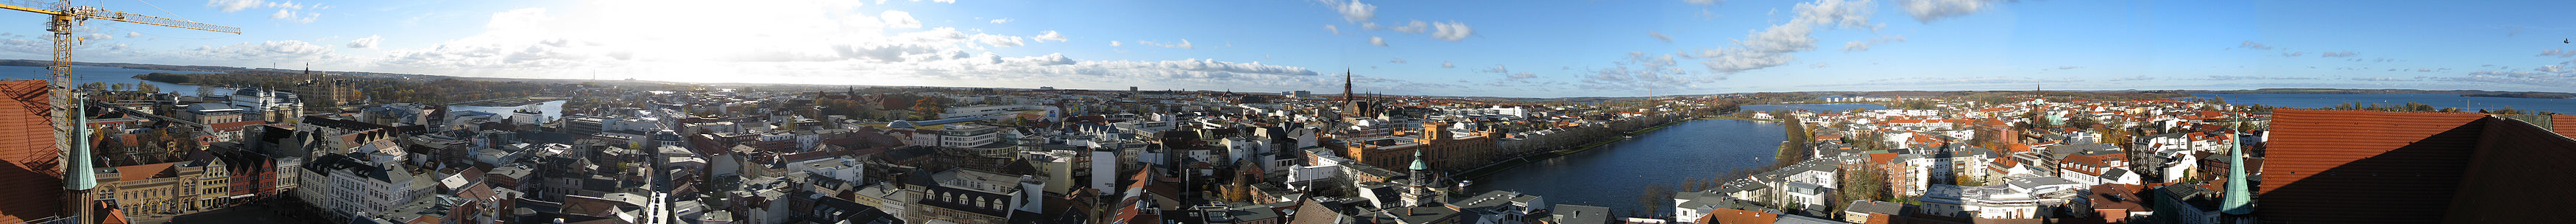 Panorama Schwerin.jpg